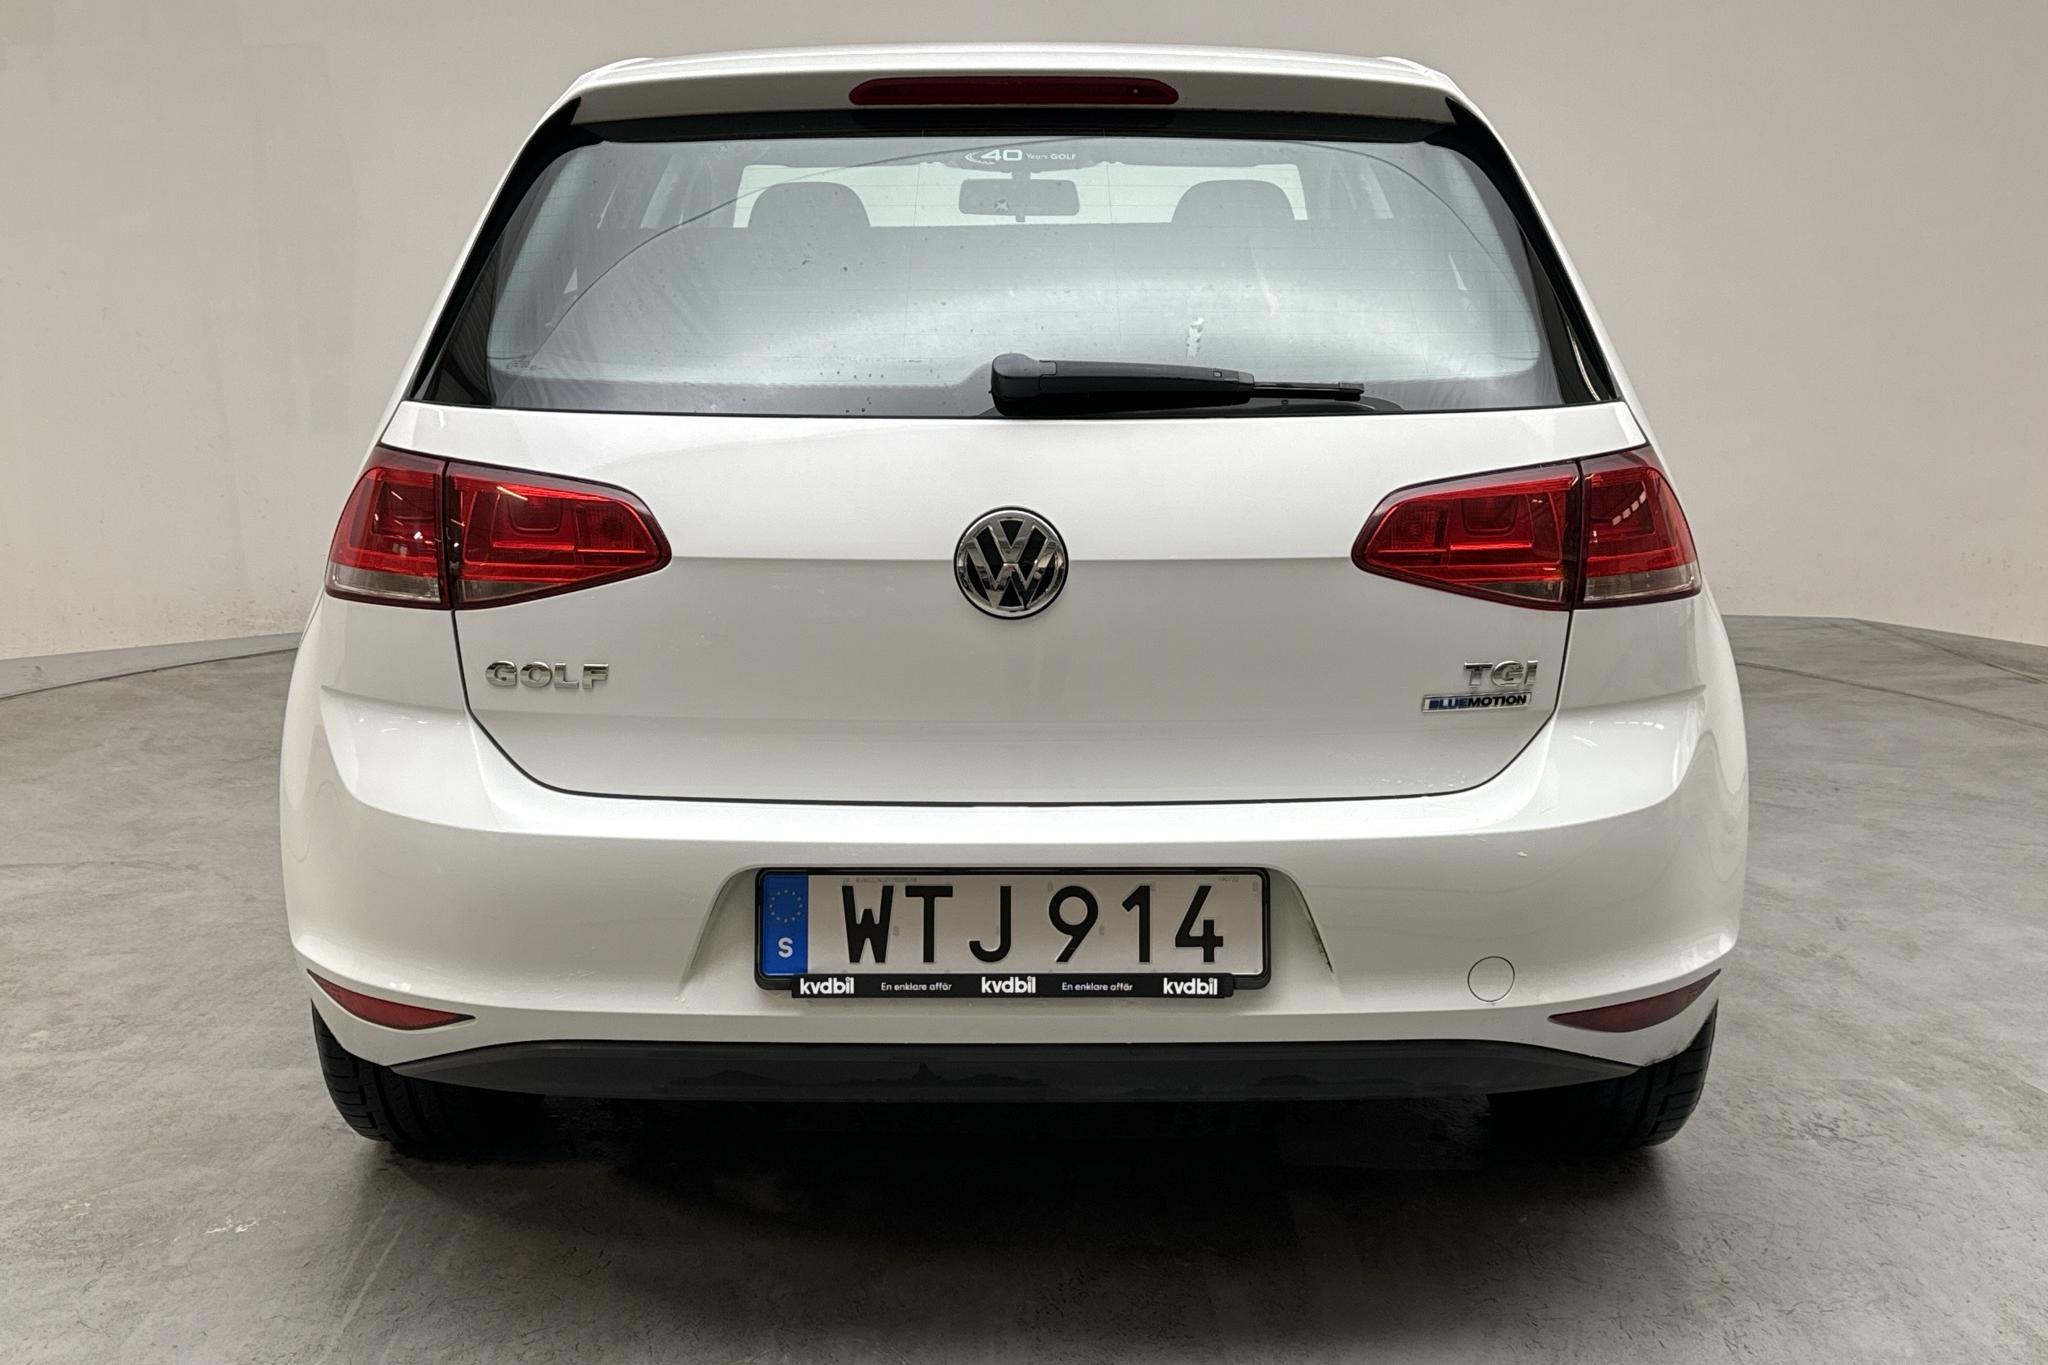 VW Golf VII 1.4 TGI 5dr (110hk) - 34 500 km - Manual - white - 2015